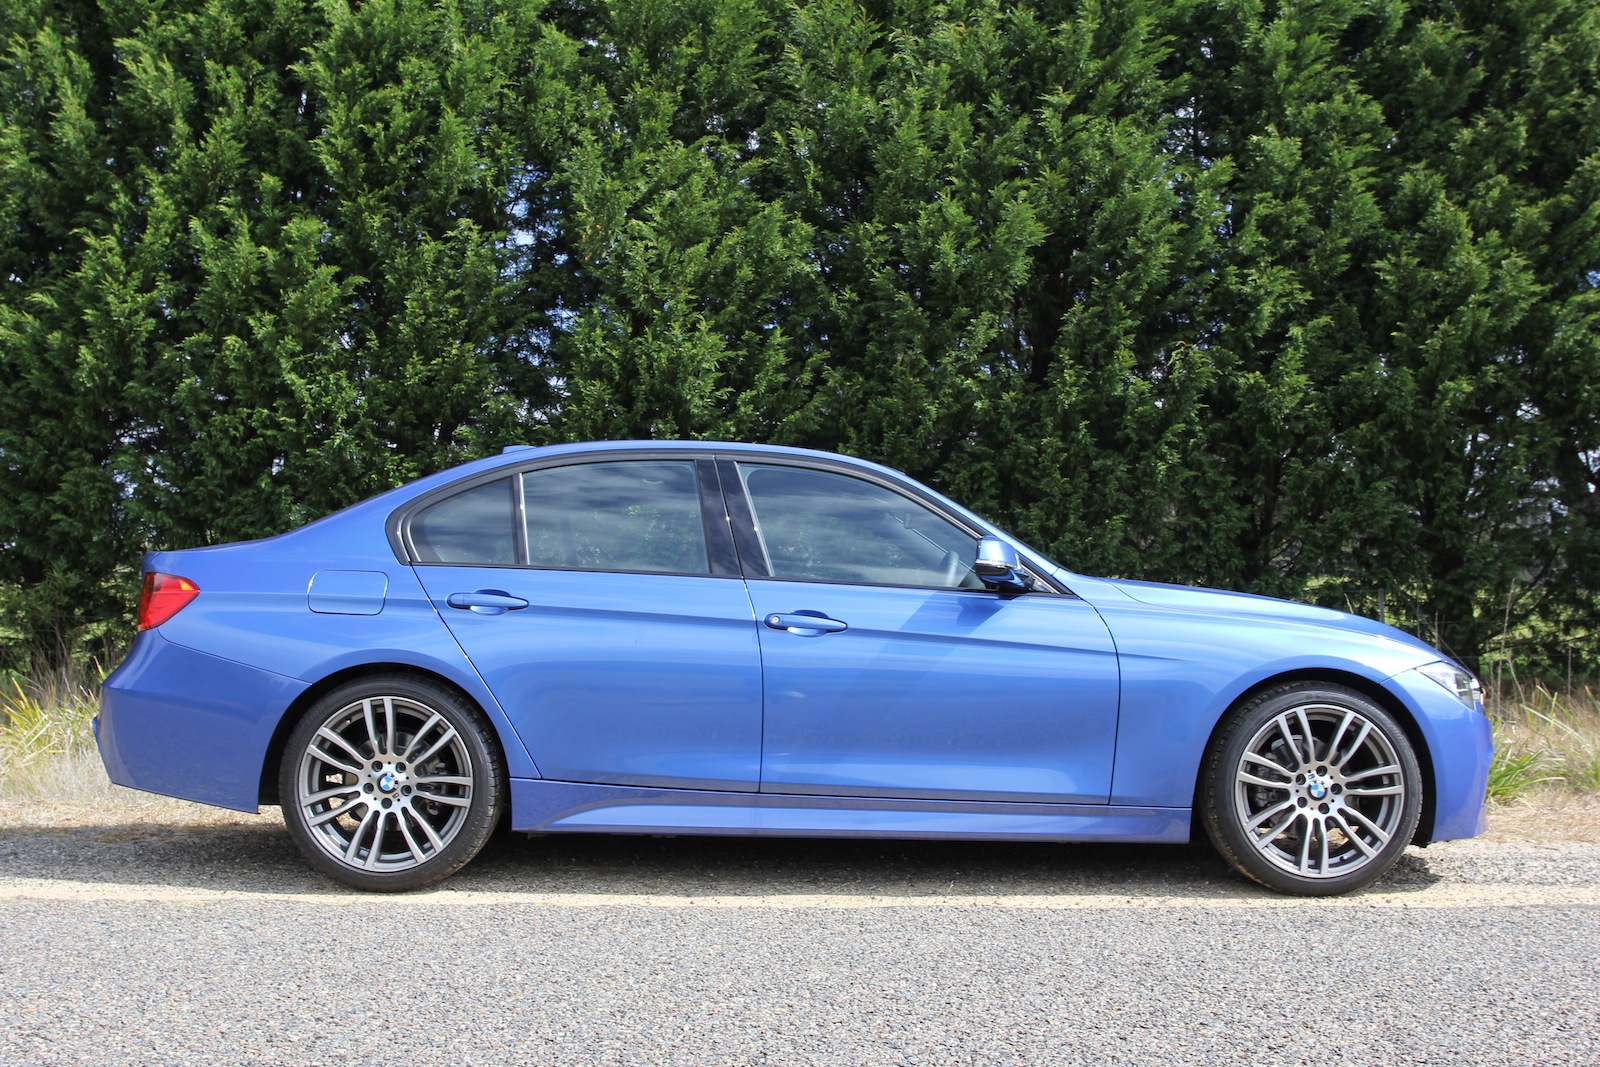 2014 BMW 3 Series Review 316i M Sport photos CarAdvice